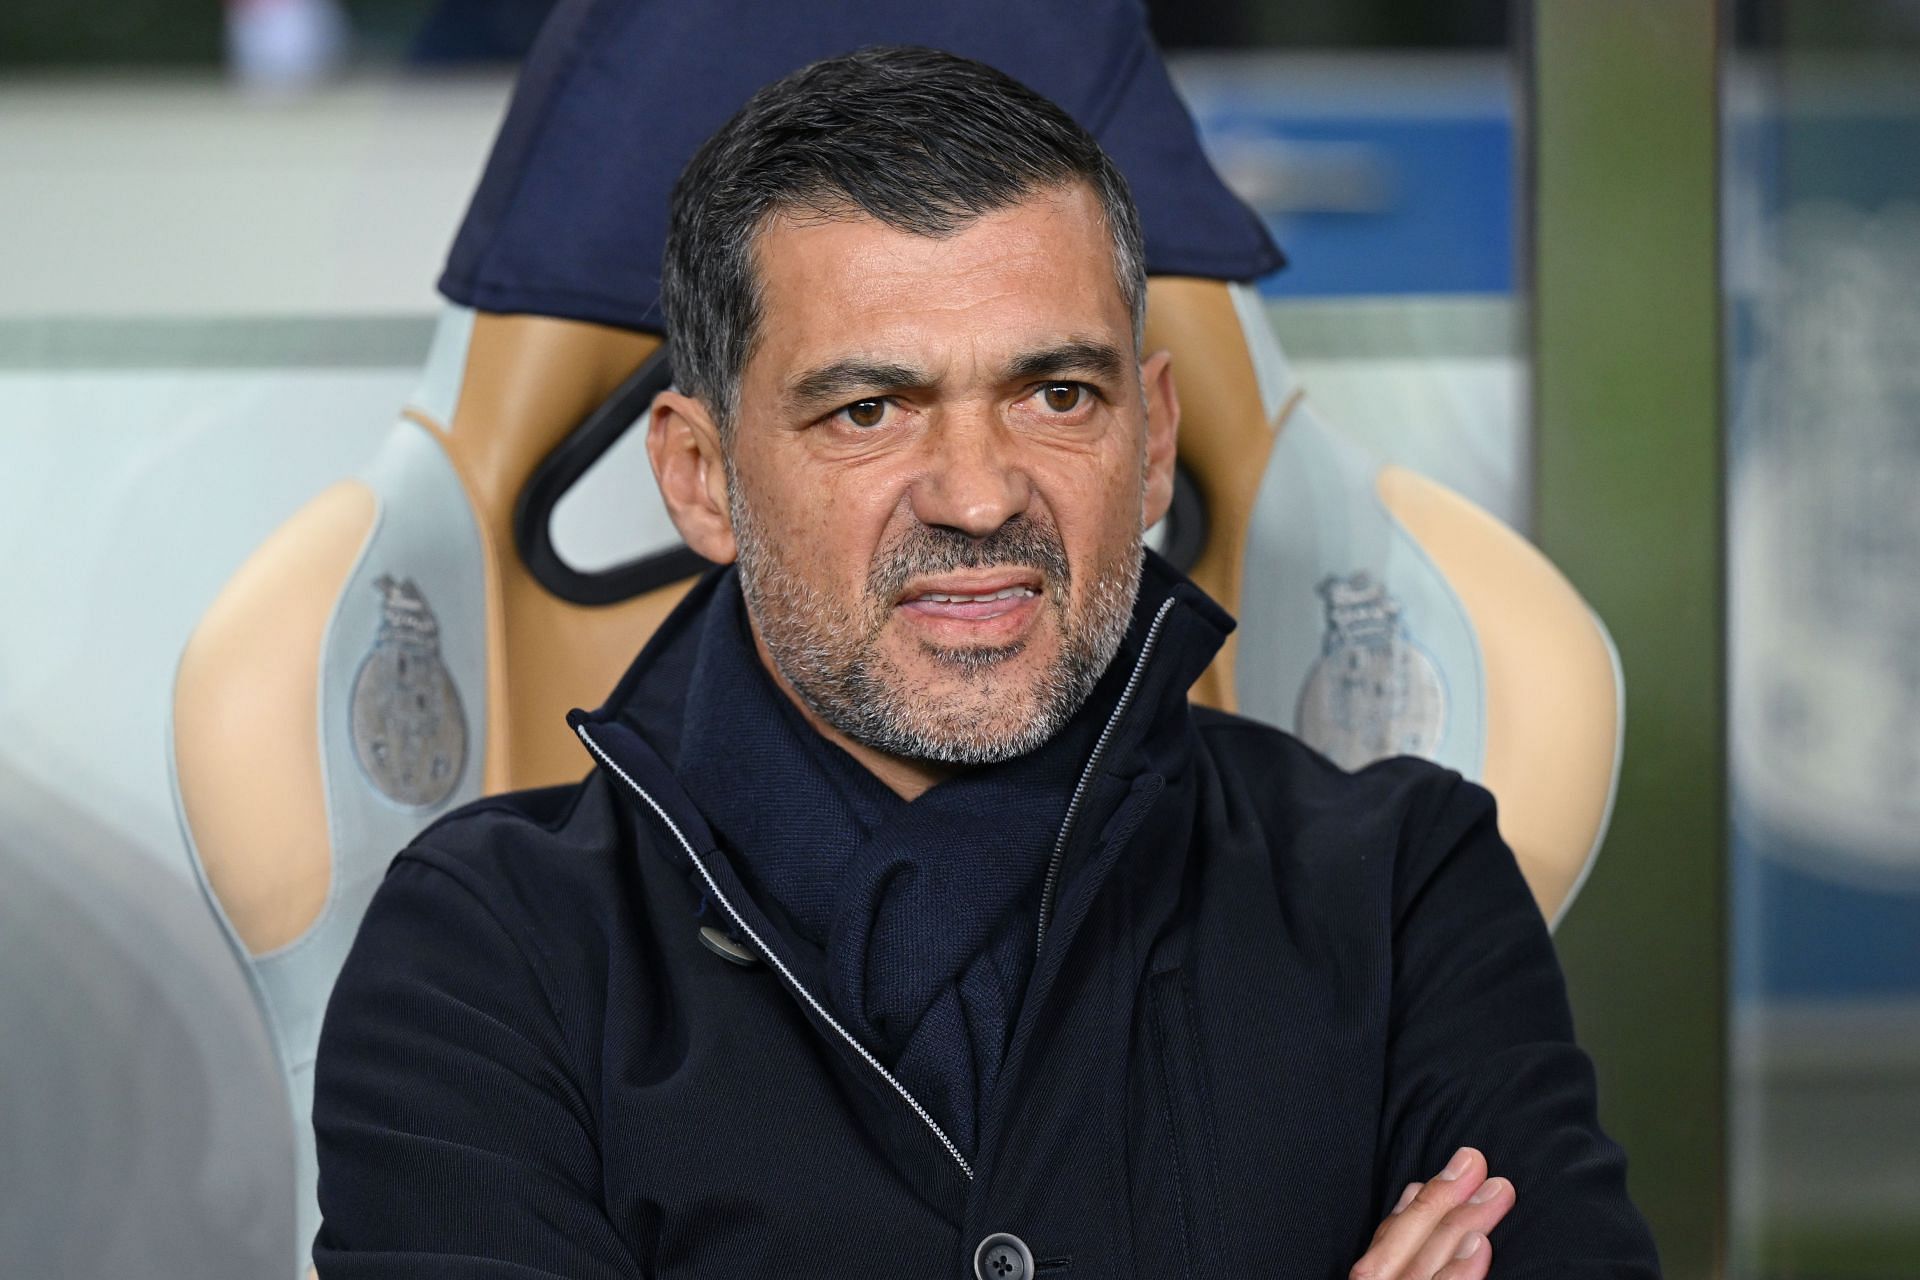 FC Porto manager Sergio Conceicao